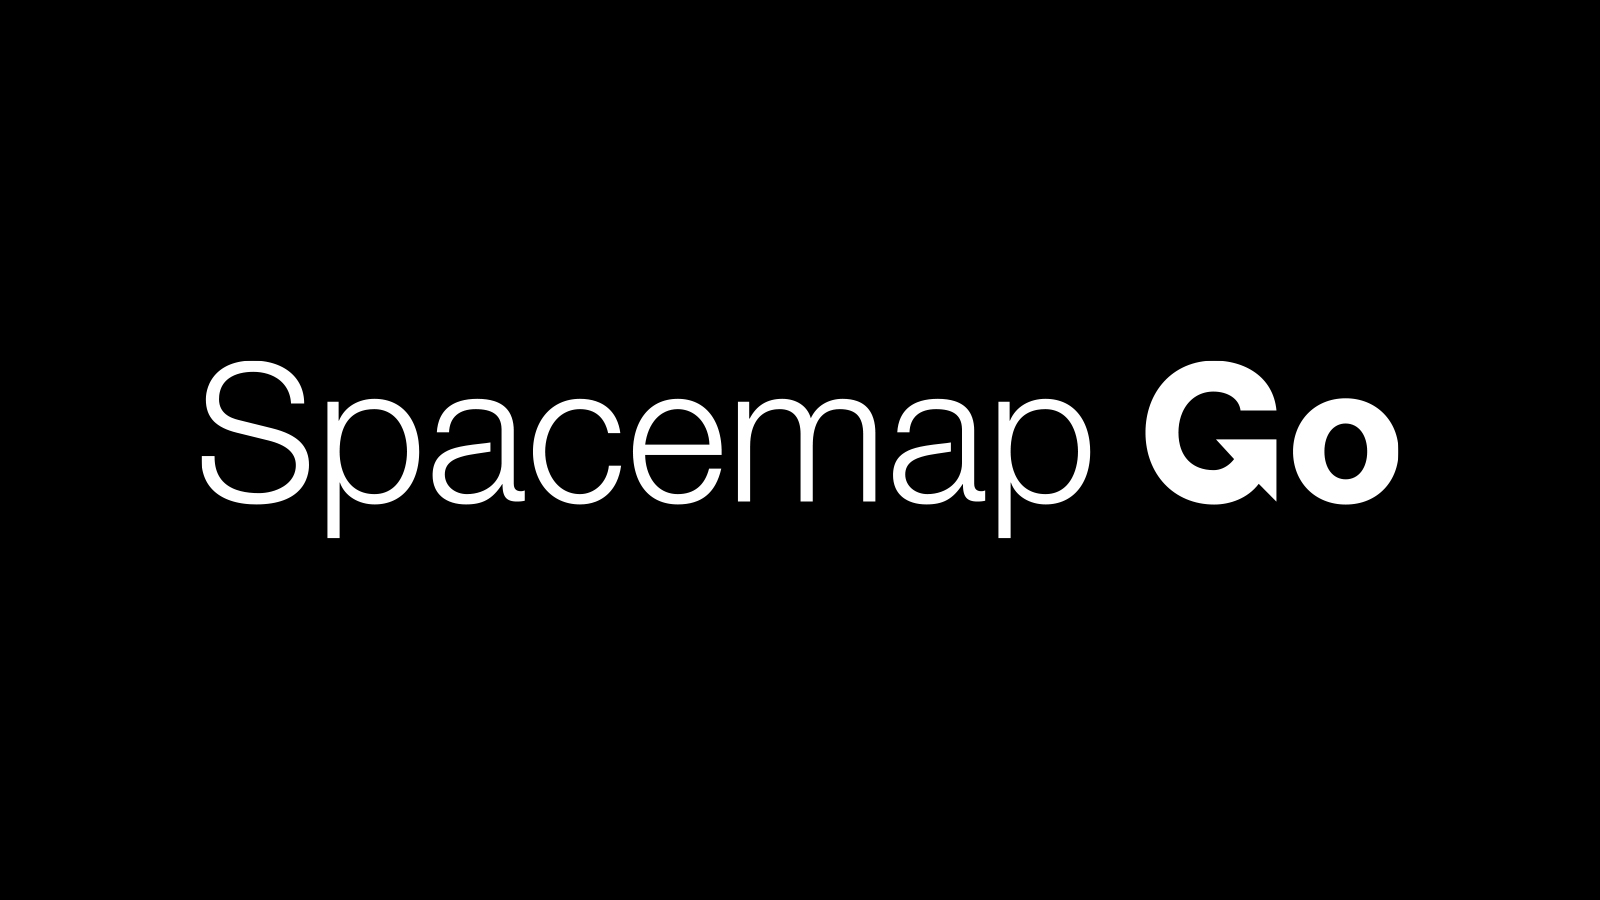 Herramienta de sonido envolvente Spacemap Go